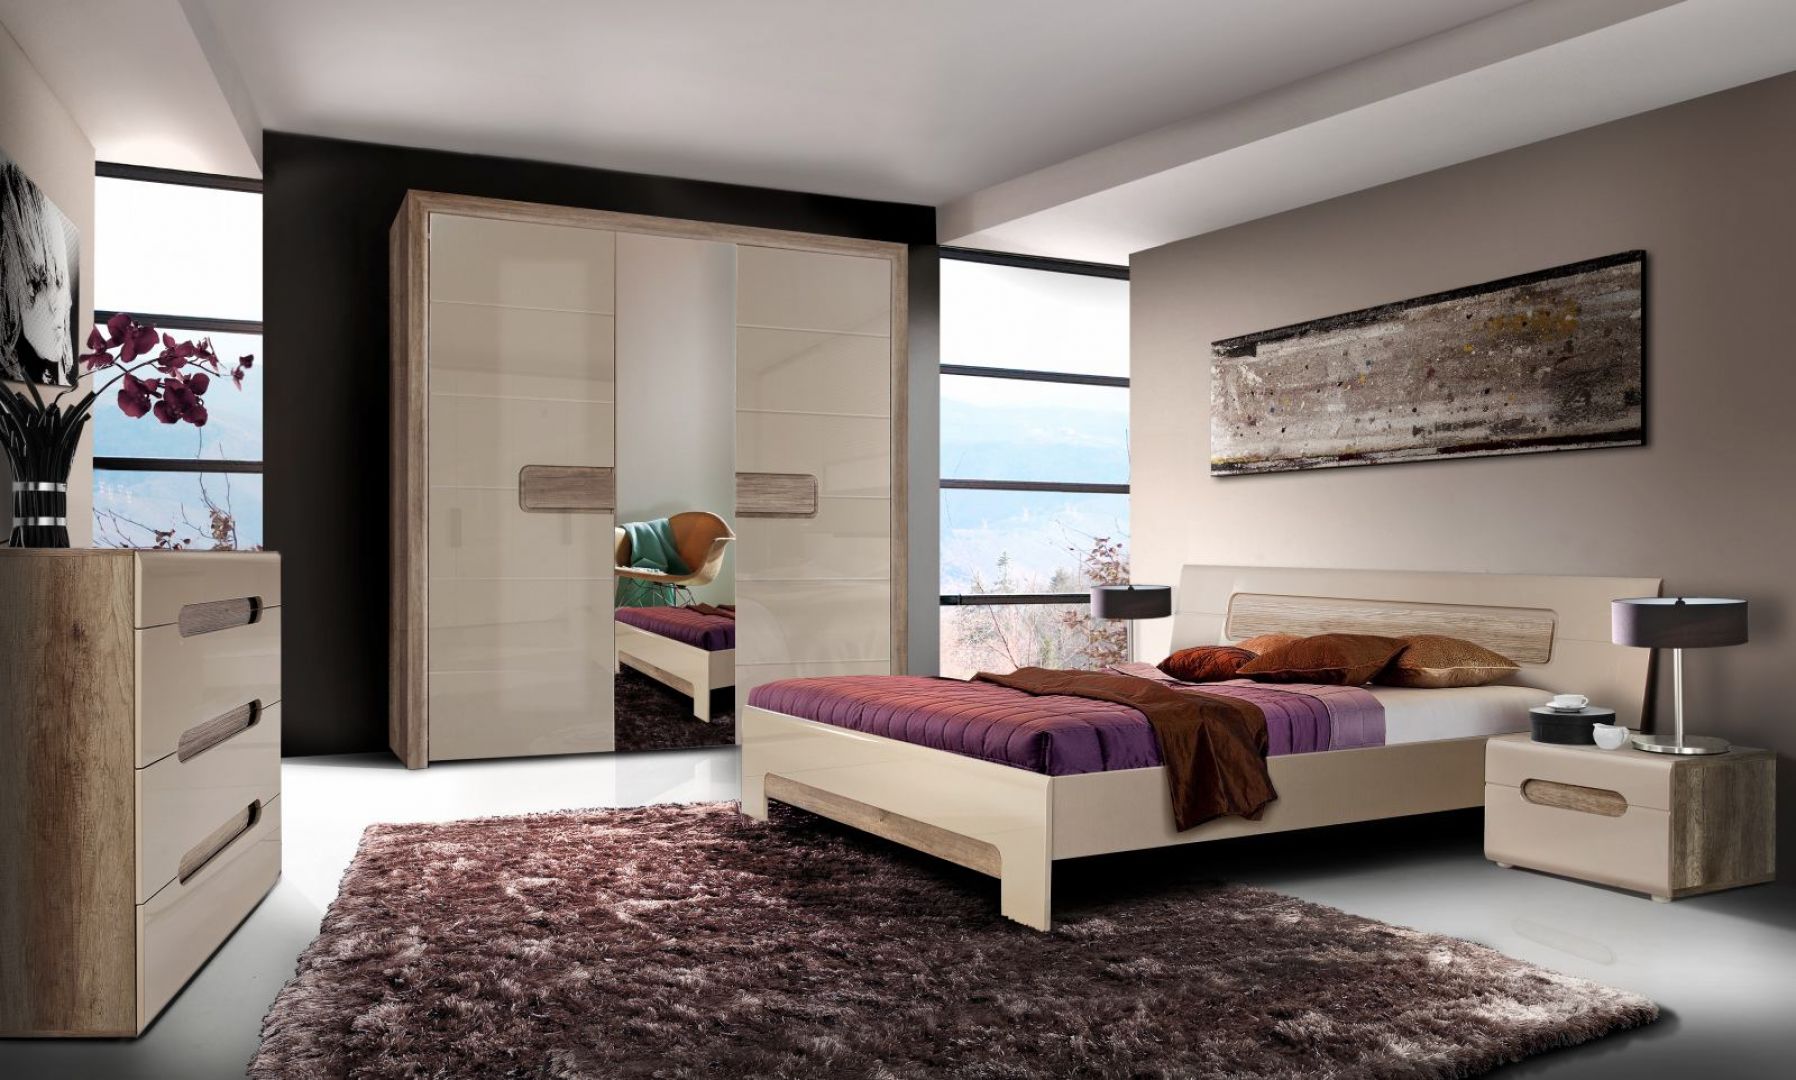 Sypialnia Tiziano ma jasne, ciepłe kolory, które doskonale nadają się do aranżacji przytulnej sypialni. Wąskie i wysokie lustro pomiędzy drzwiami w szafie  optycznie powiększy pokój. Cena: od 1149 zł. Fot. Meble Forte